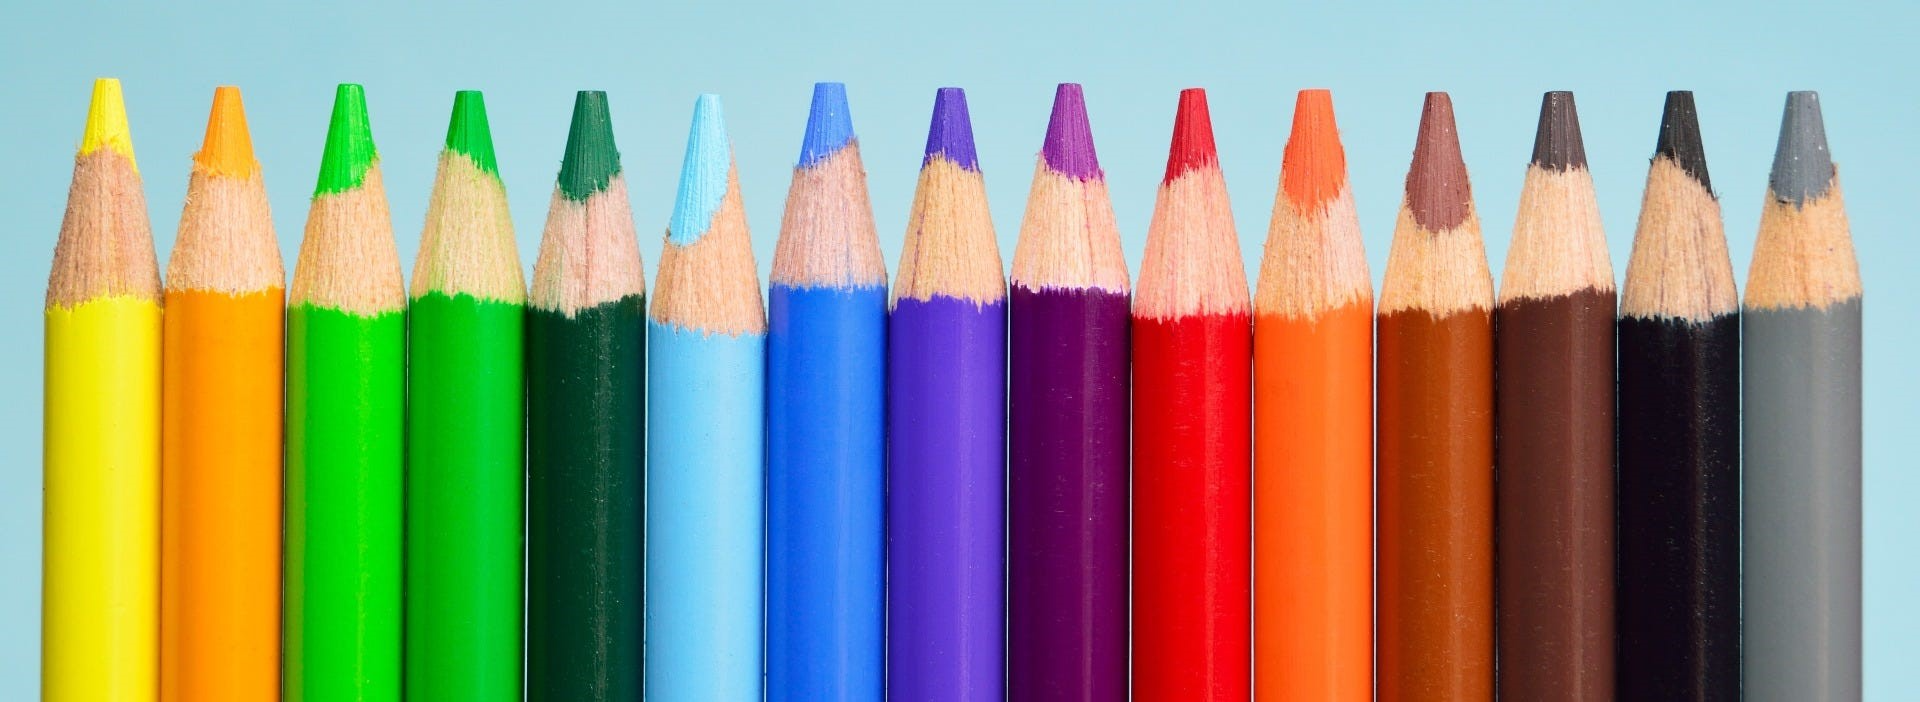 Kindergarten Registration Picture with Pencils